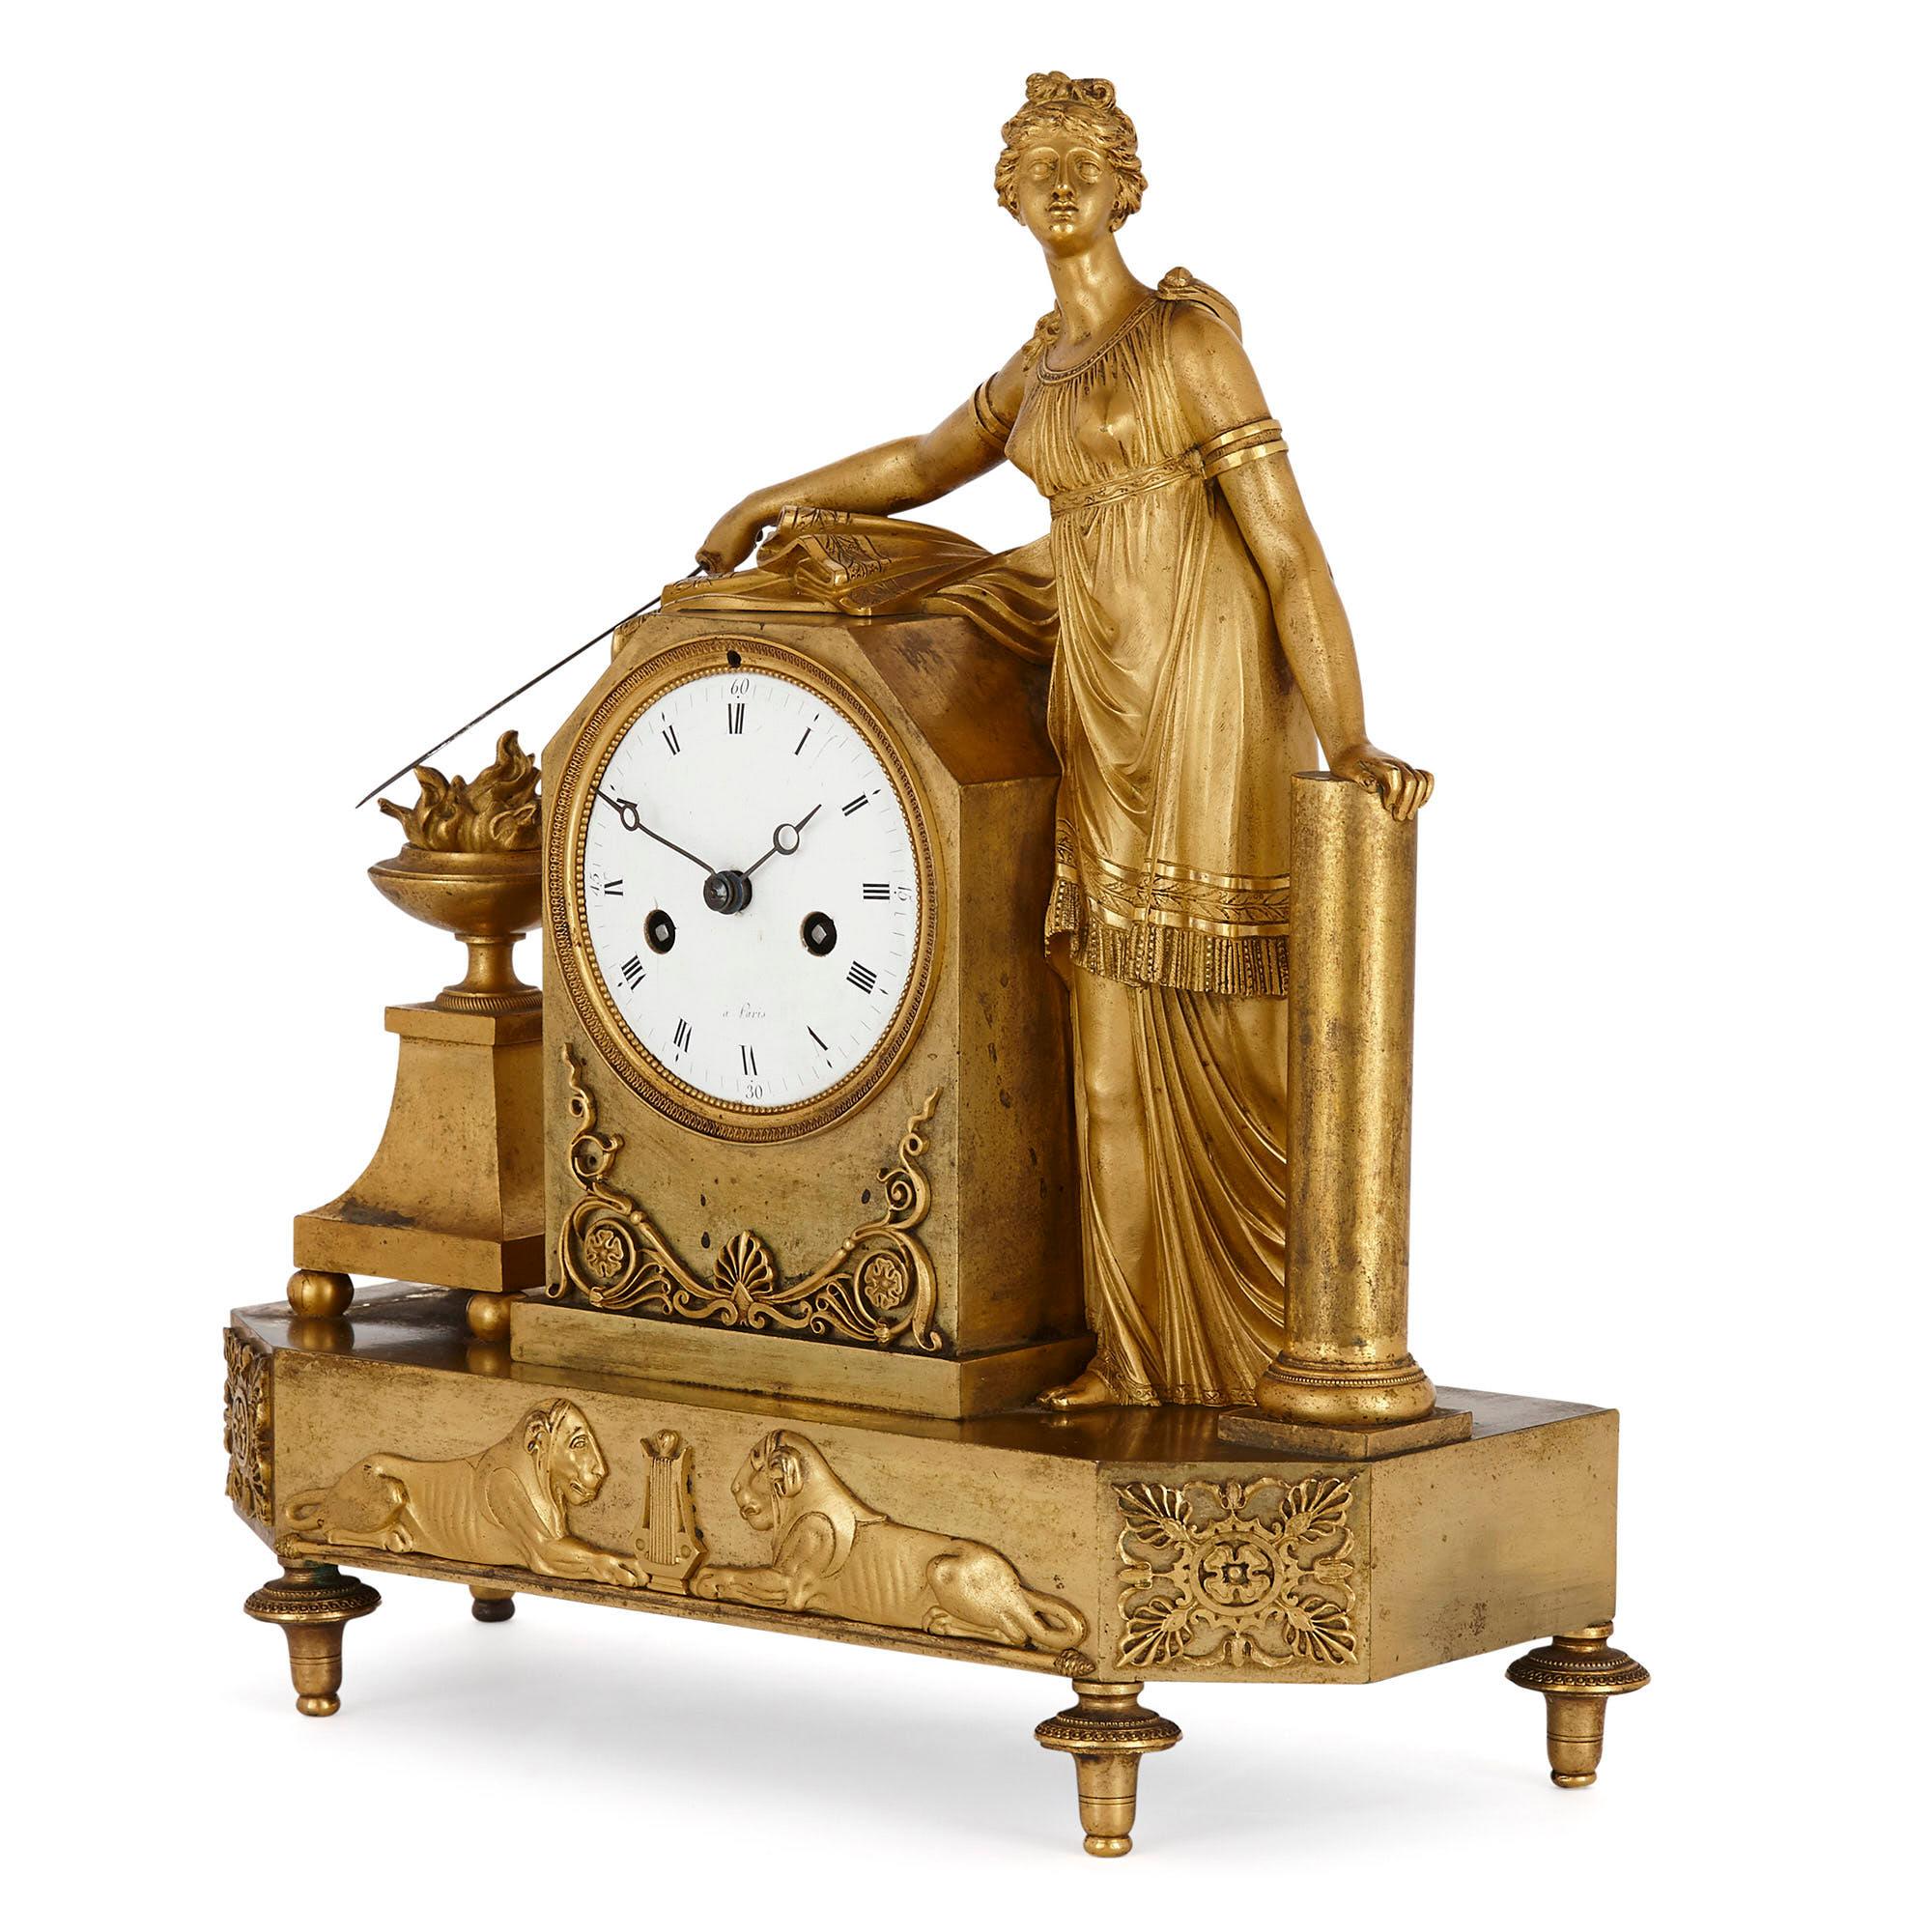 Pendule de cheminée figurative en bronze doré d'époque Empire
Français, début du 19e siècle
Mesures : Hauteur 33cm, largeur 31cm, profondeur 12cm

Cette superbe horloge de cheminée est un merveilleux exemple du type d'horloge qui prévalait à